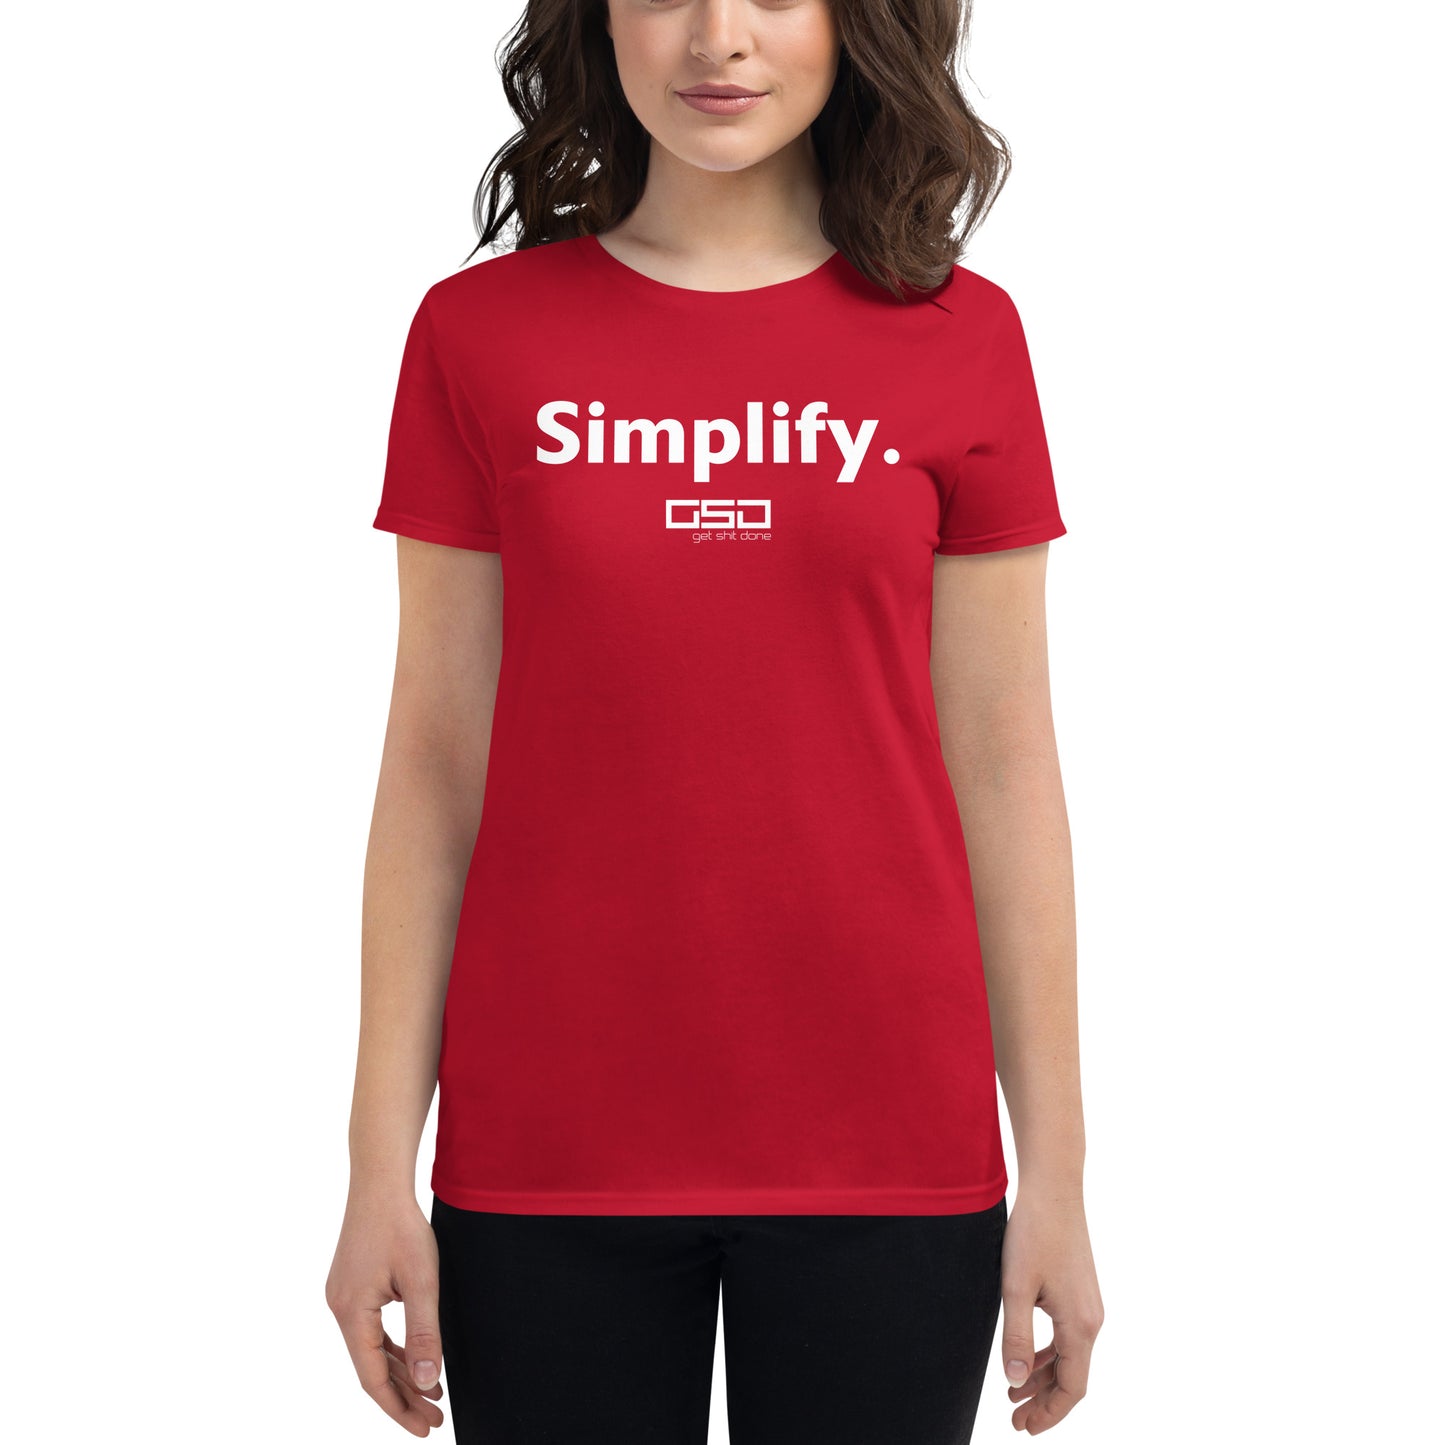 Simplify-Women's short sleeve t-shirt